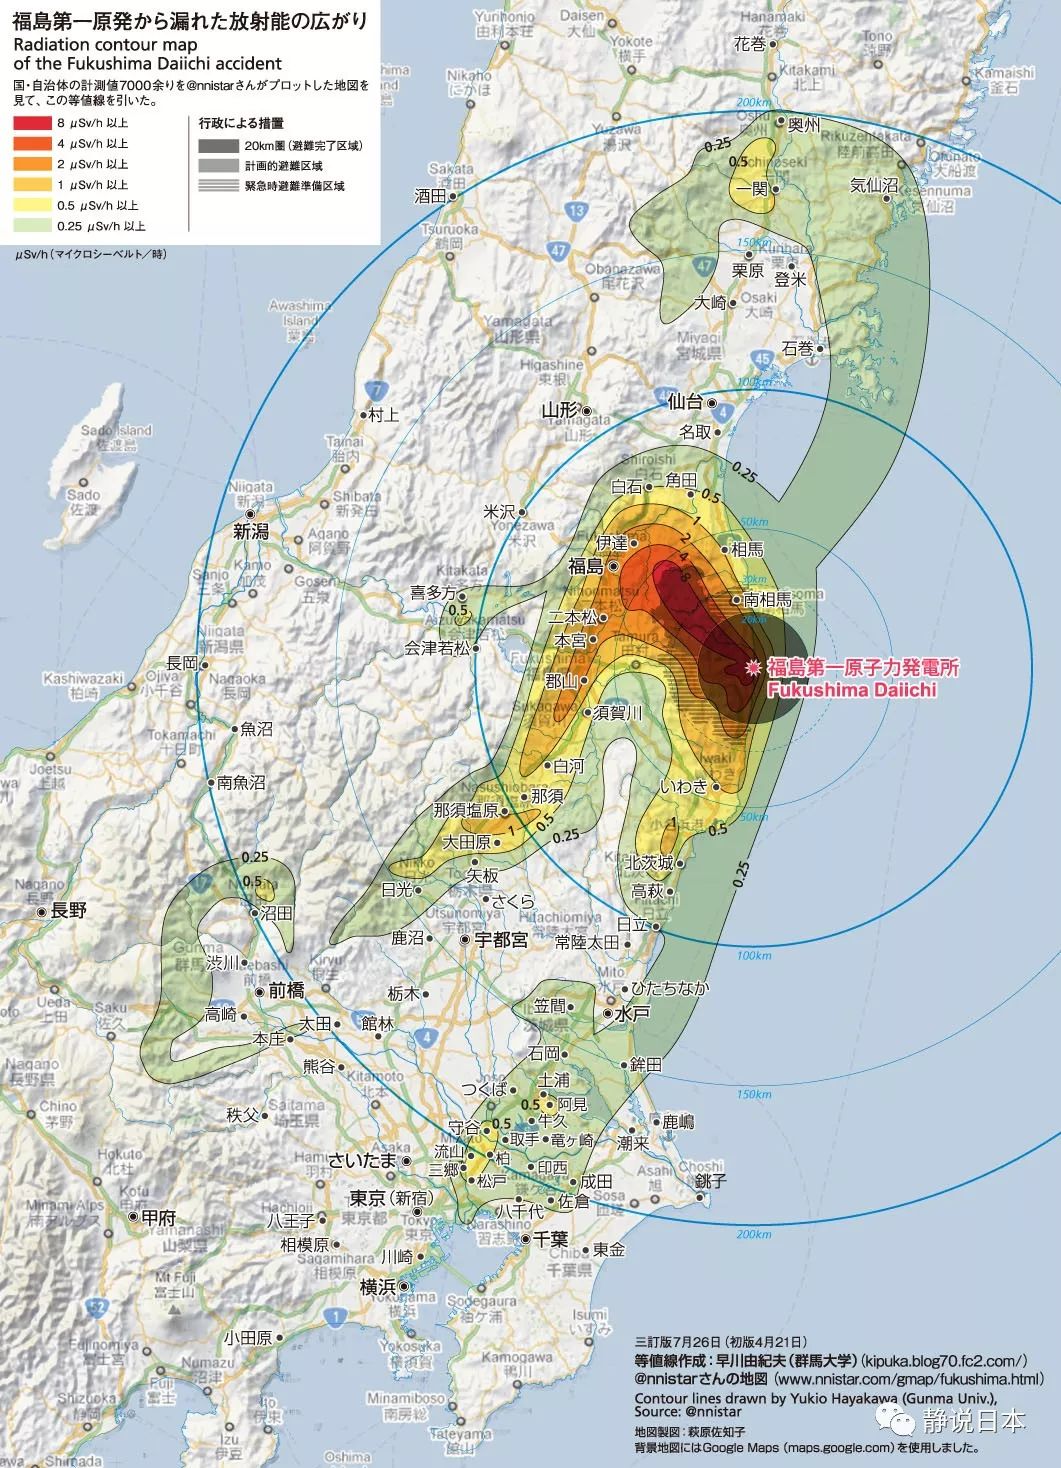 走进核泄露事故现场:福岛核电站到底还有多危险